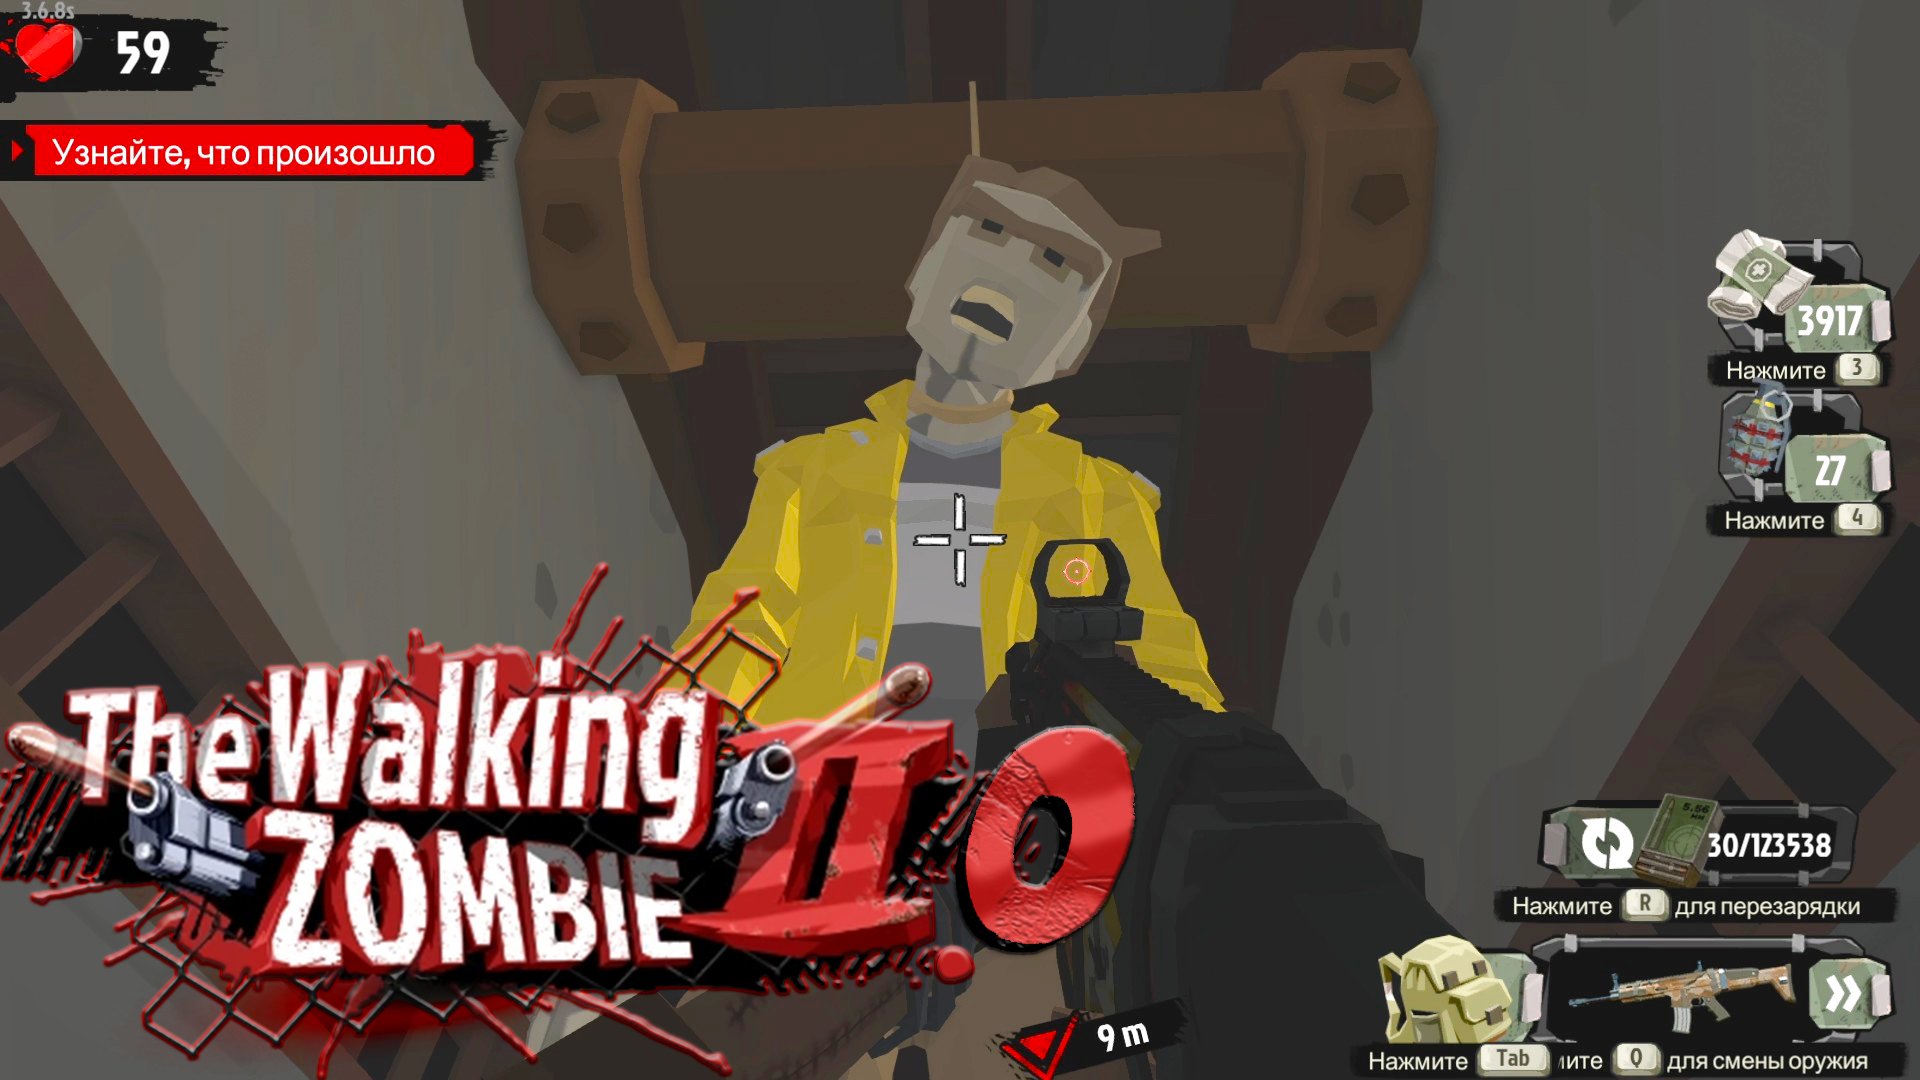 The Walking Zombie 2.0 ► Внезапное приключение в канализации